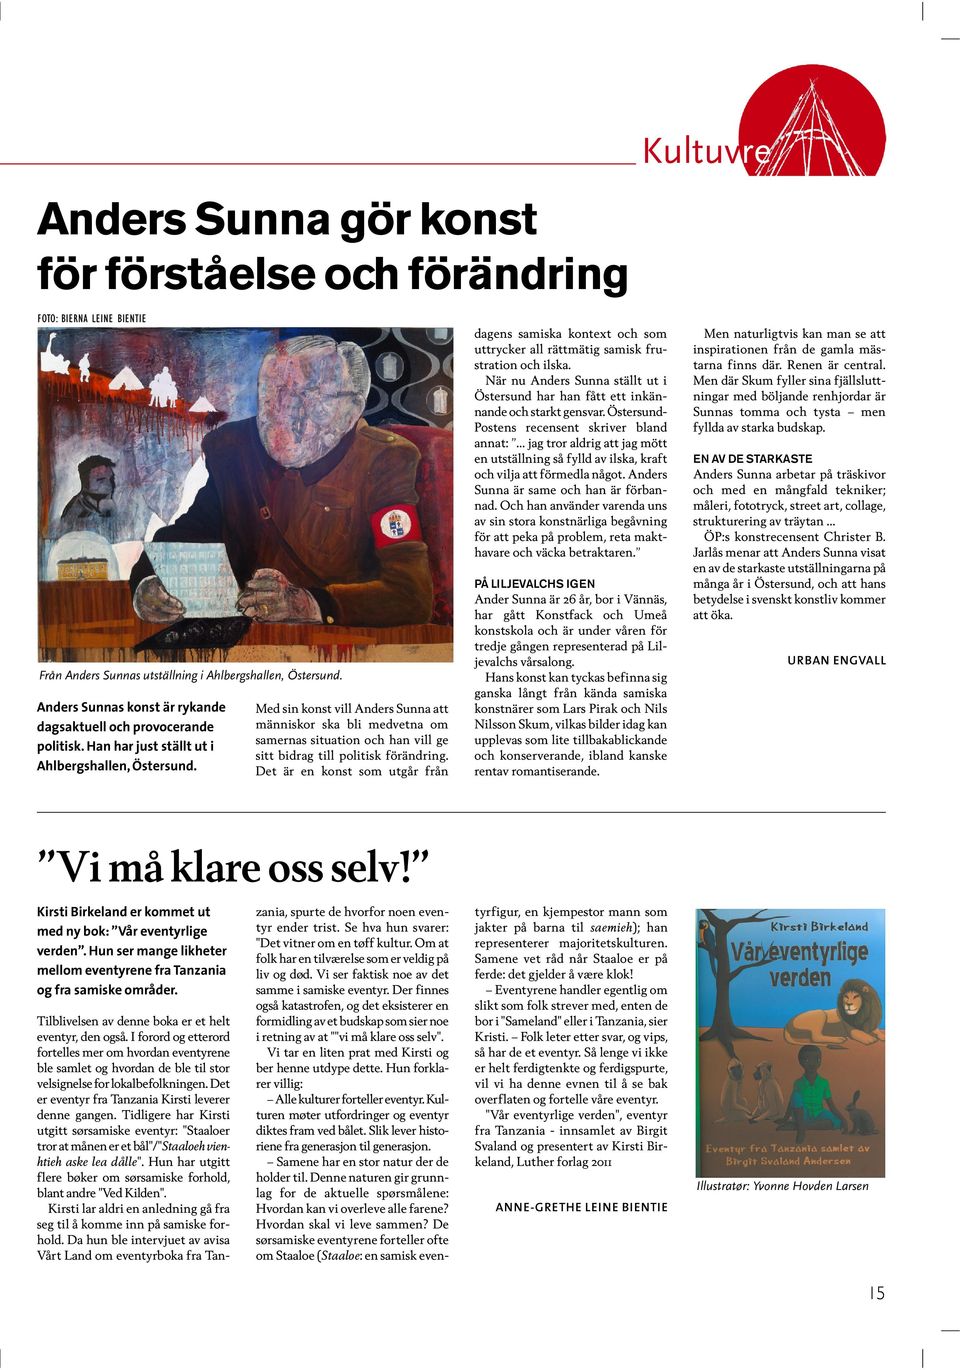 Med sin konst vill Anders Sunna att människor ska bli medvetna om samernas situation och han vill ge sitt bidrag till politisk förändring.